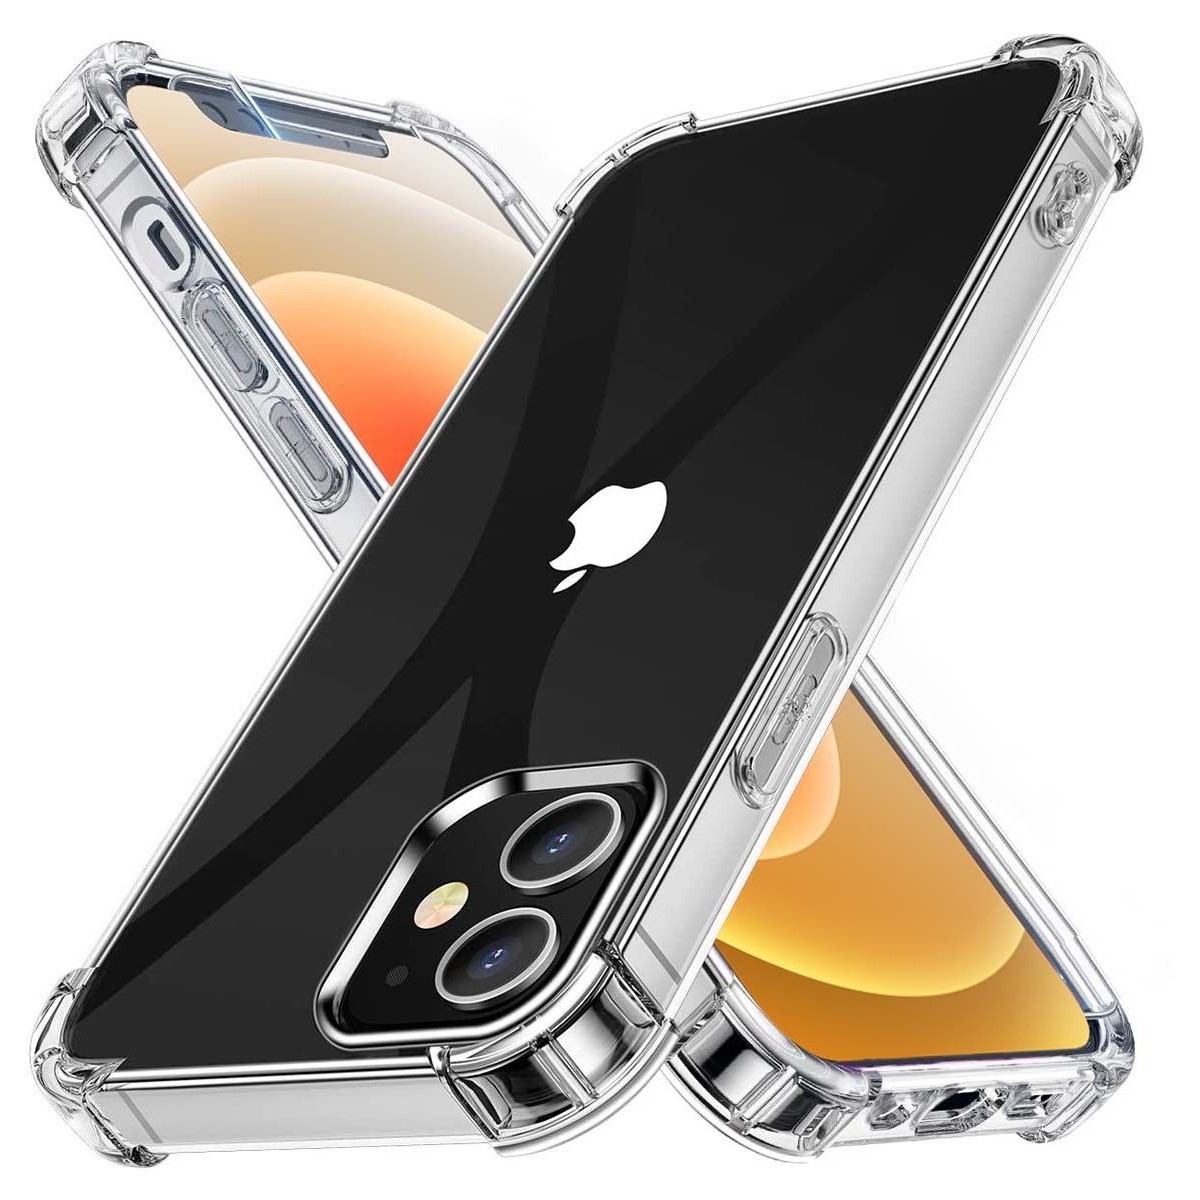 Funda Gel Tpu Anti-Shock Transparente para Iphone 12 Mini (5.4)